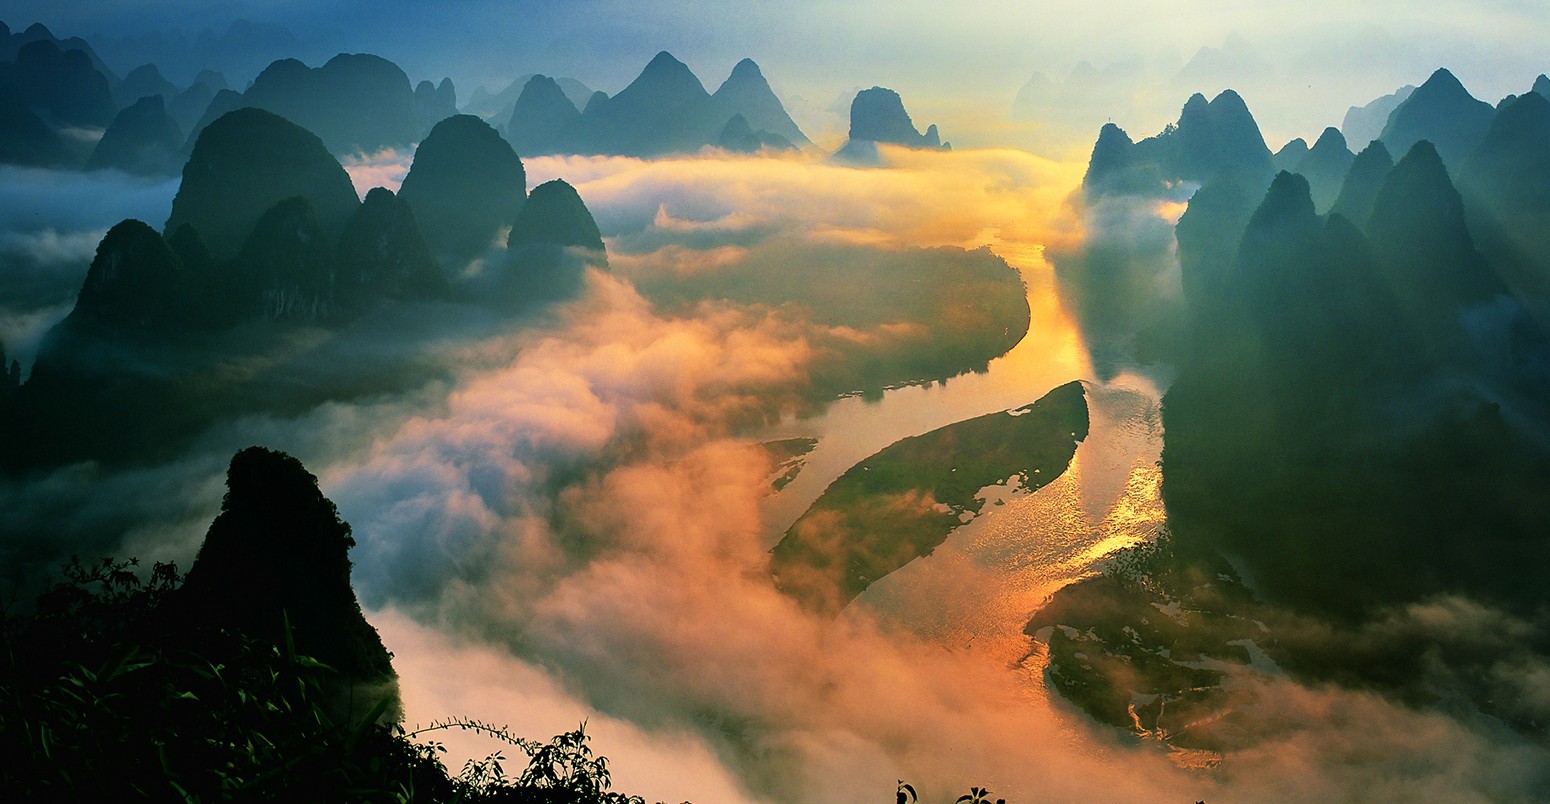 Lijiang Sunrise in Guilin China.